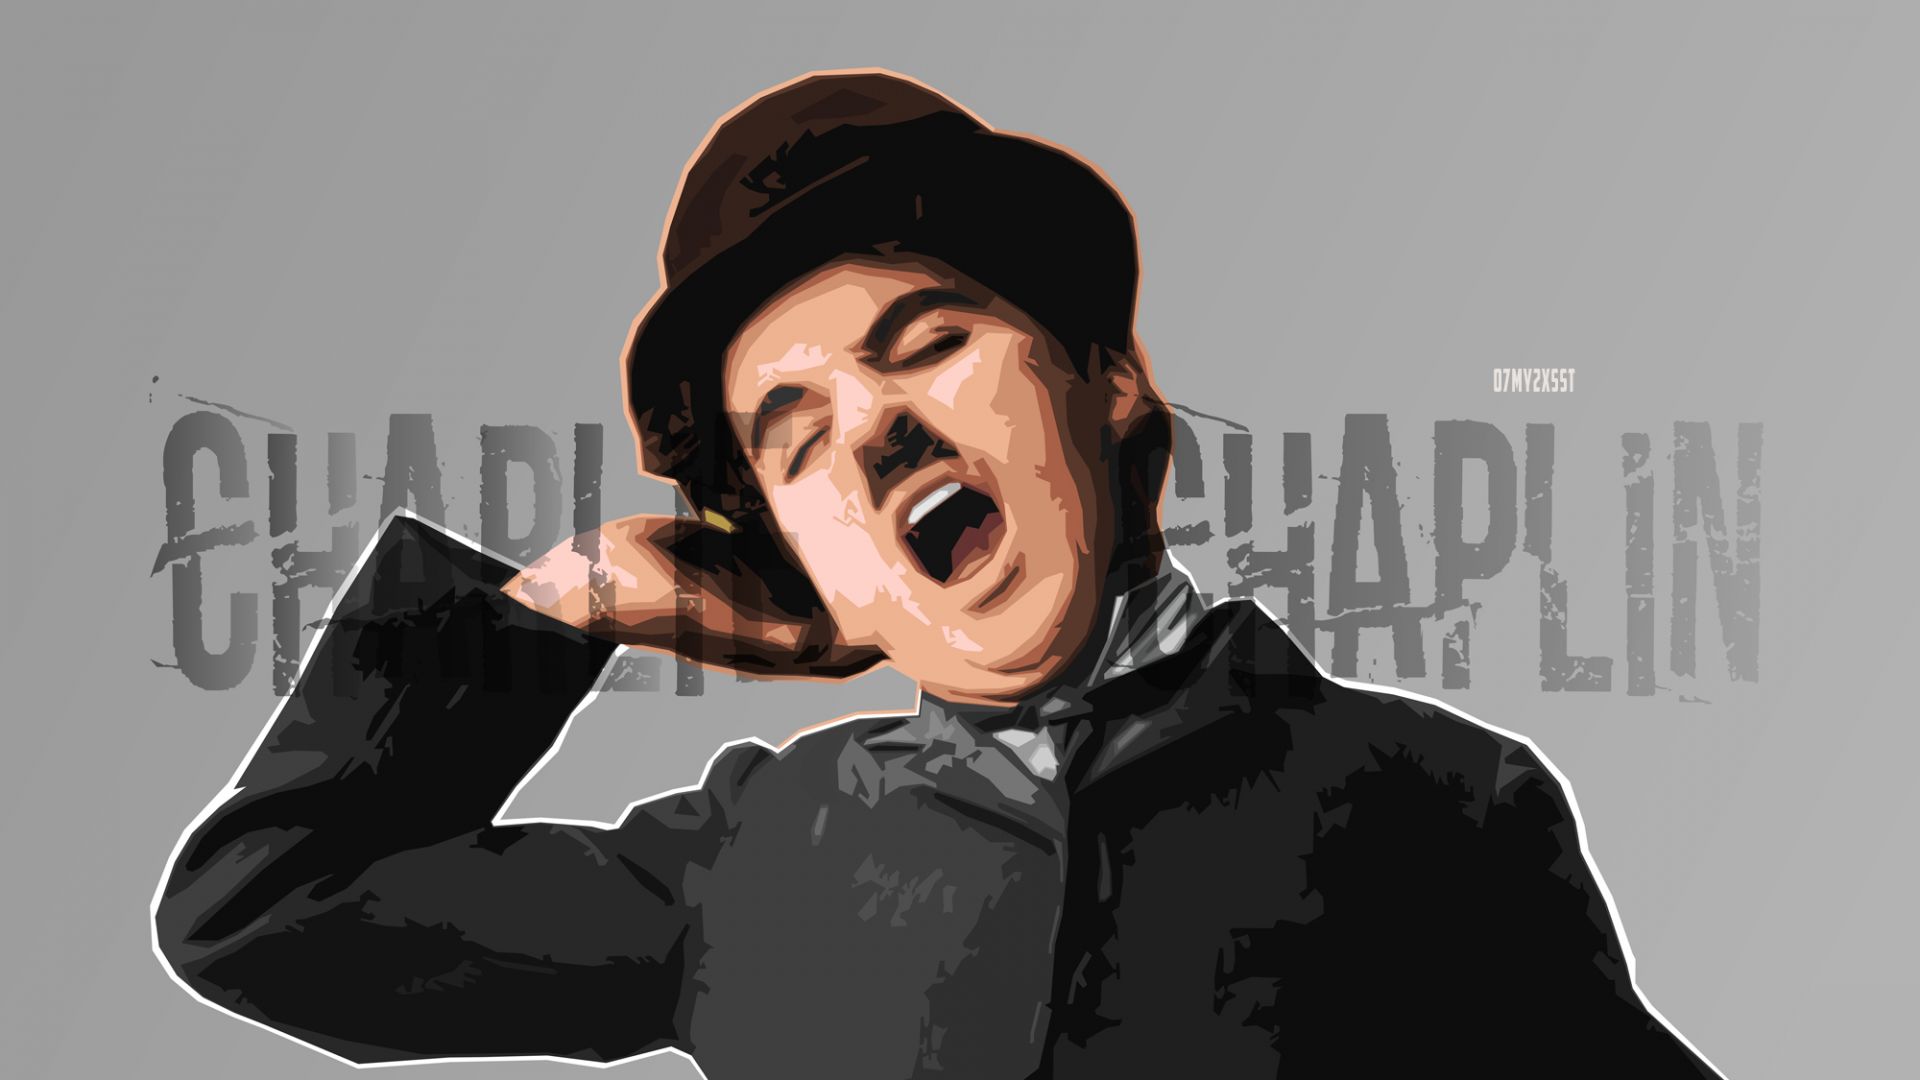 Wallpaper Charlie Chaplin, actor, art